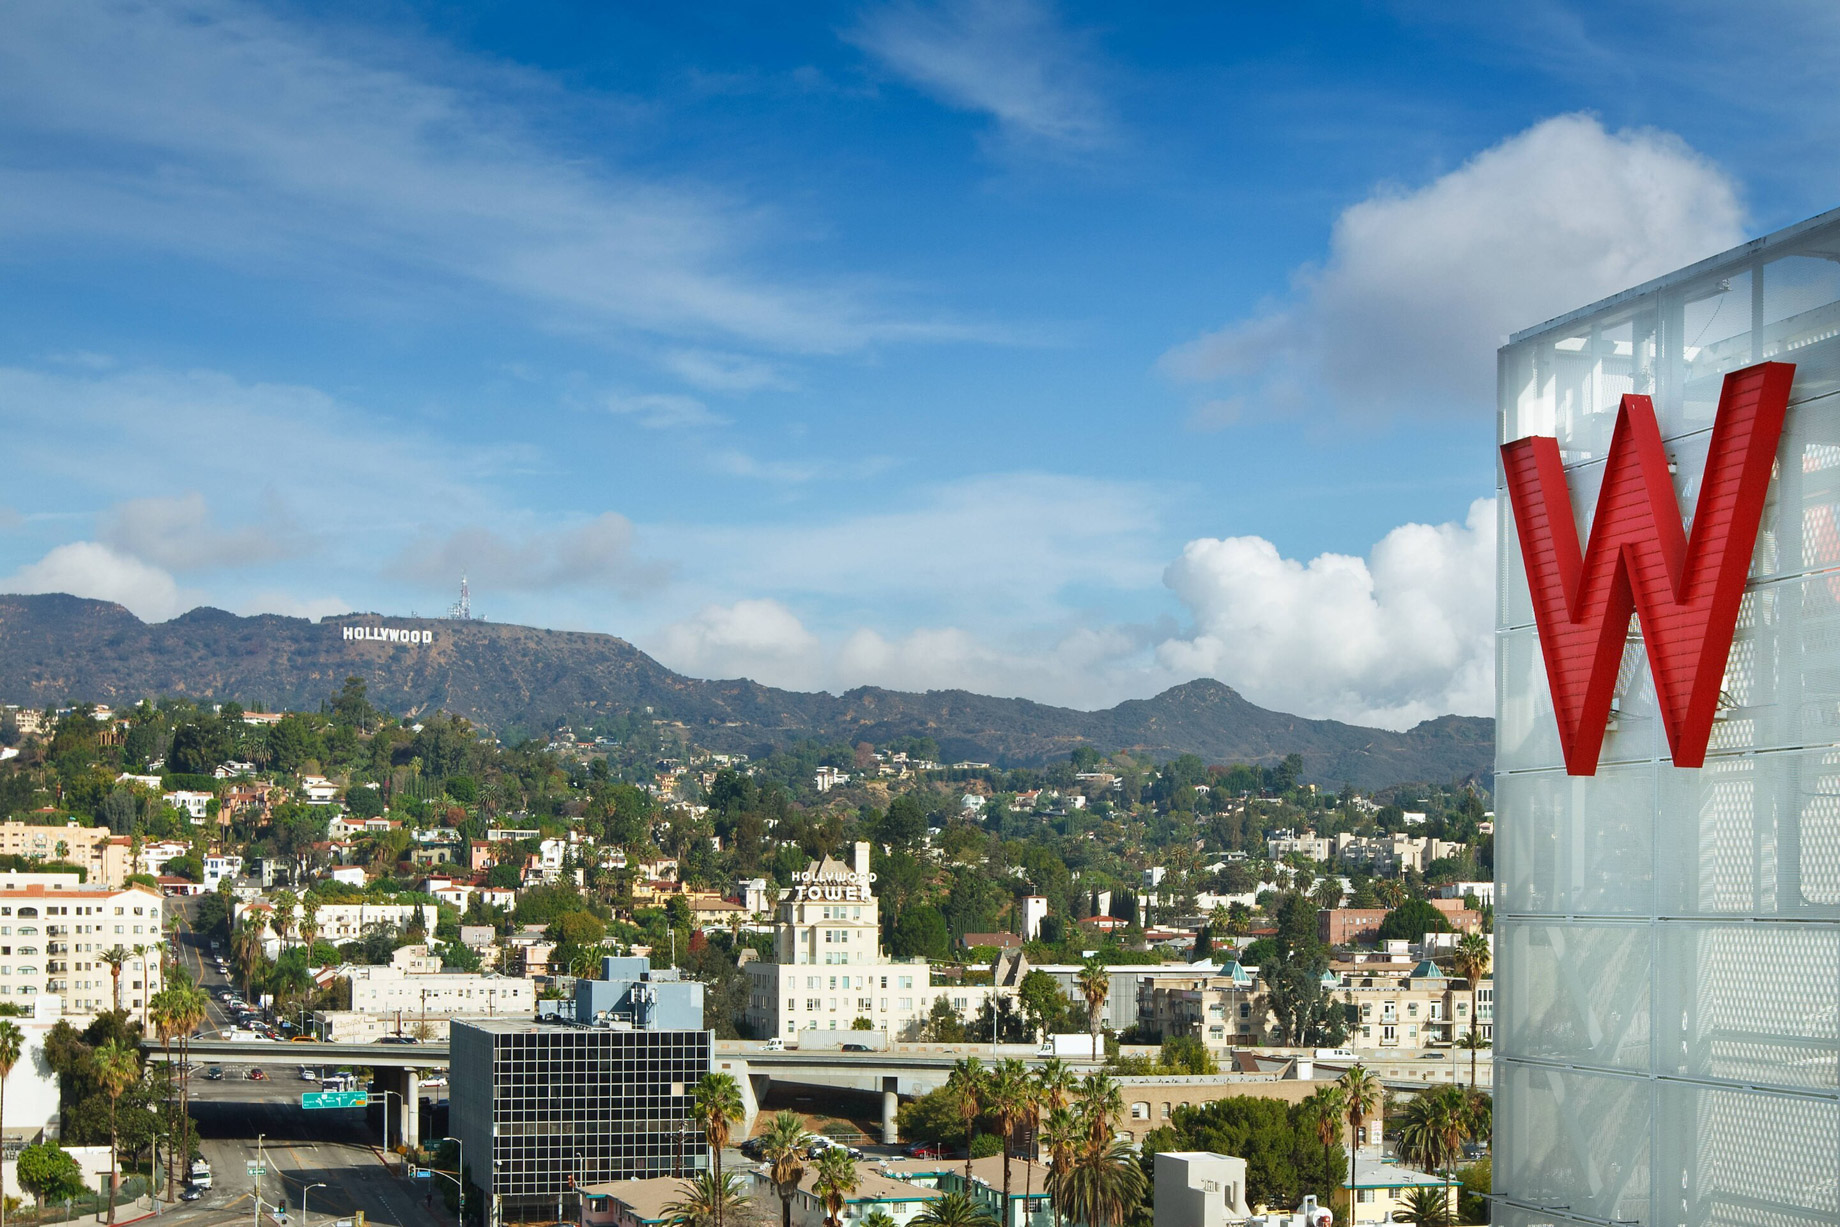 W Hollywood Hotel – Hollywood, CA, USA – W Hollywood View